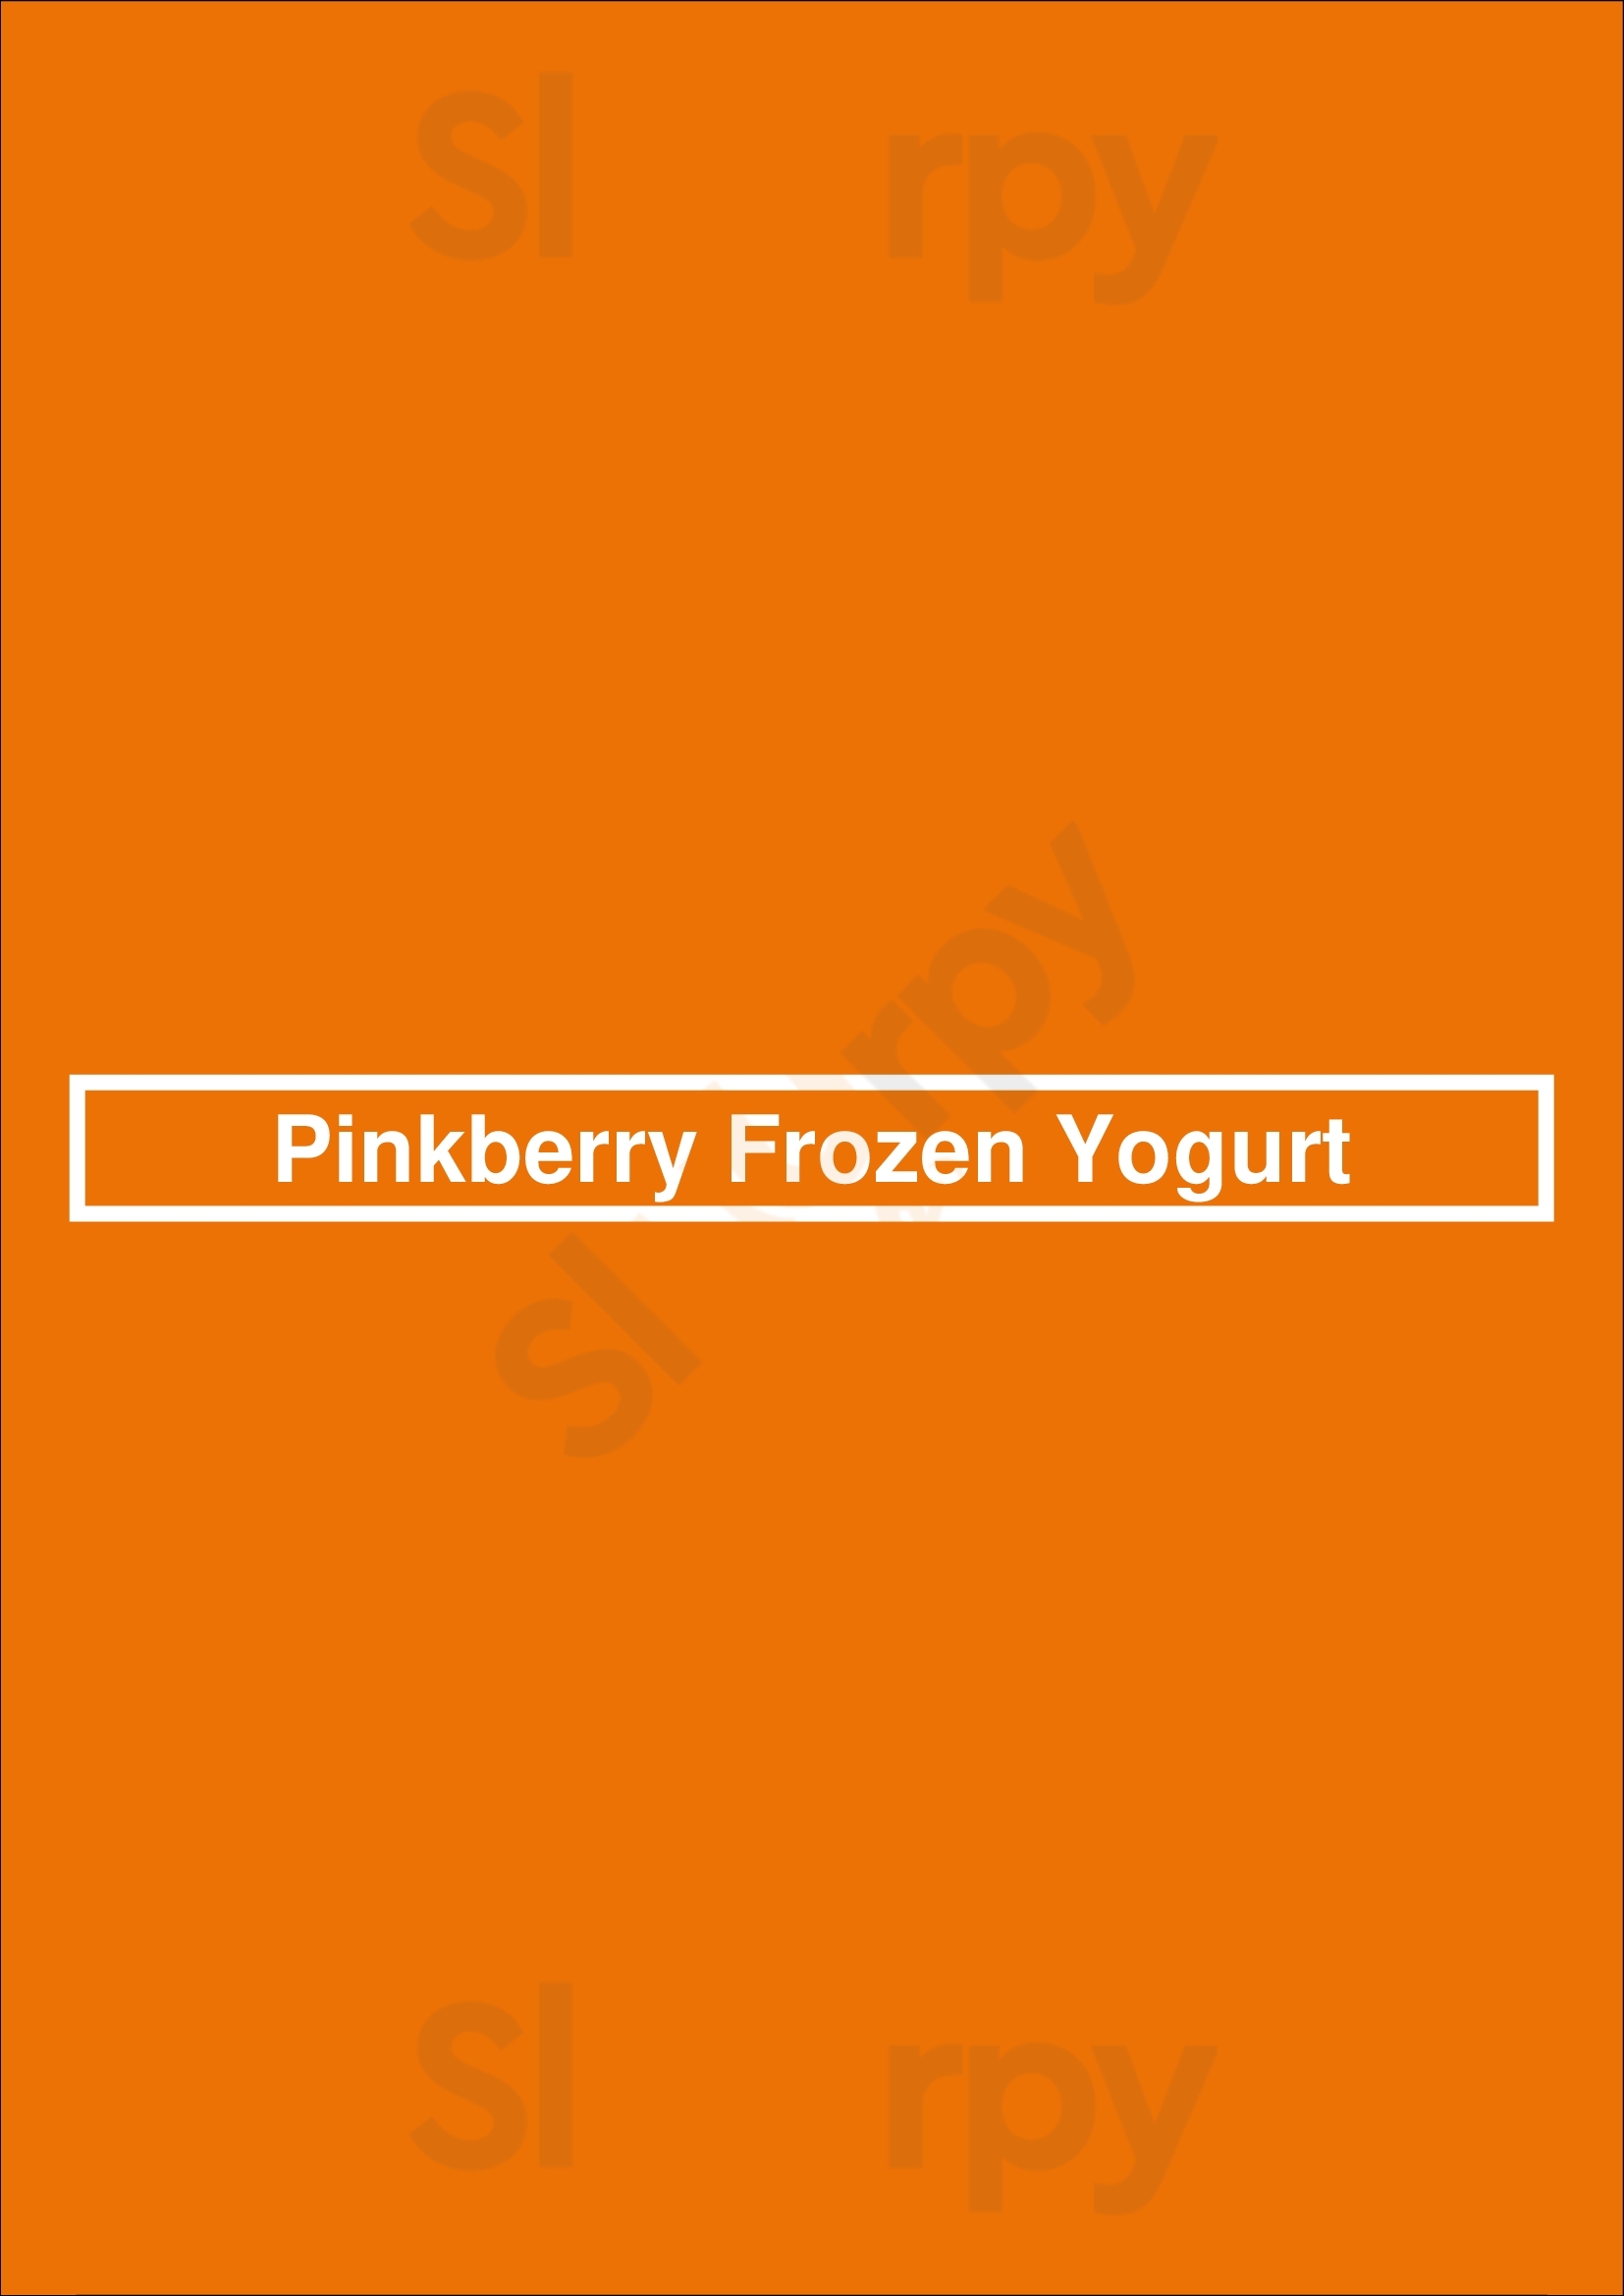 Pinkberry Frozen Yogurt Houston Menu - 1